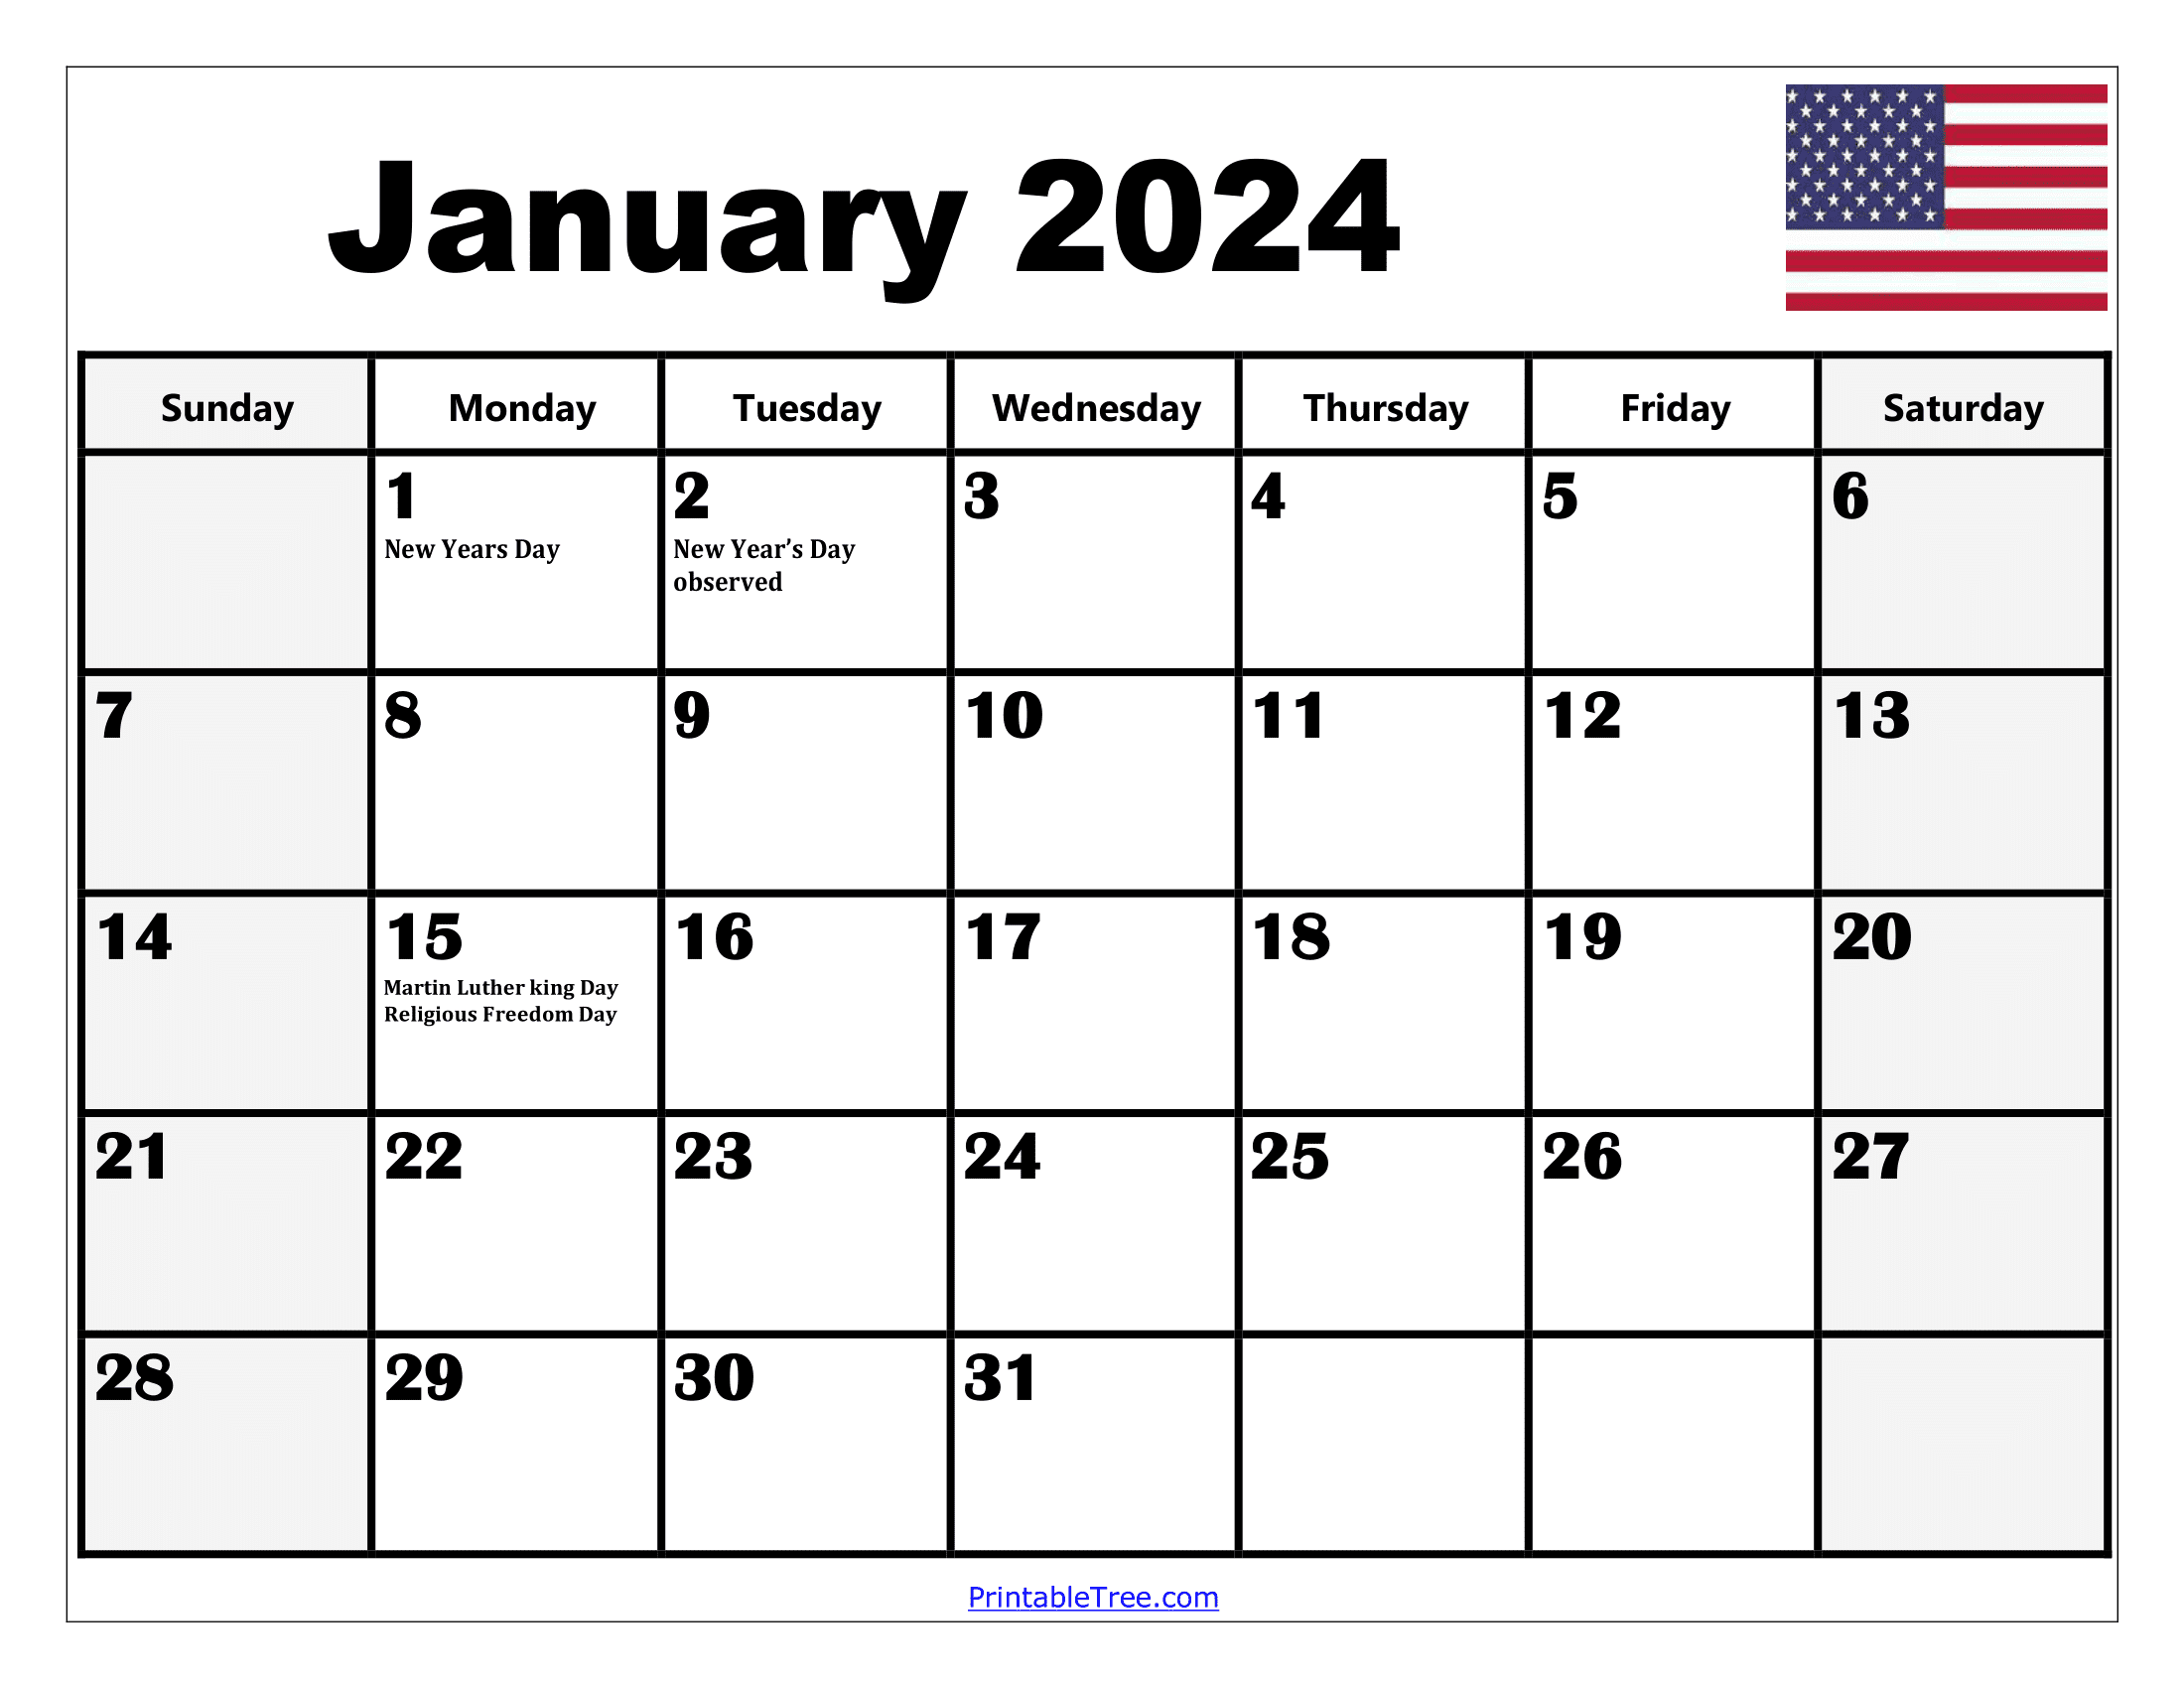 2024 Holiday Calendar Days Free Download Nov 2024 Calendar - Free Printable 2024 Calendar With Holidays In Word